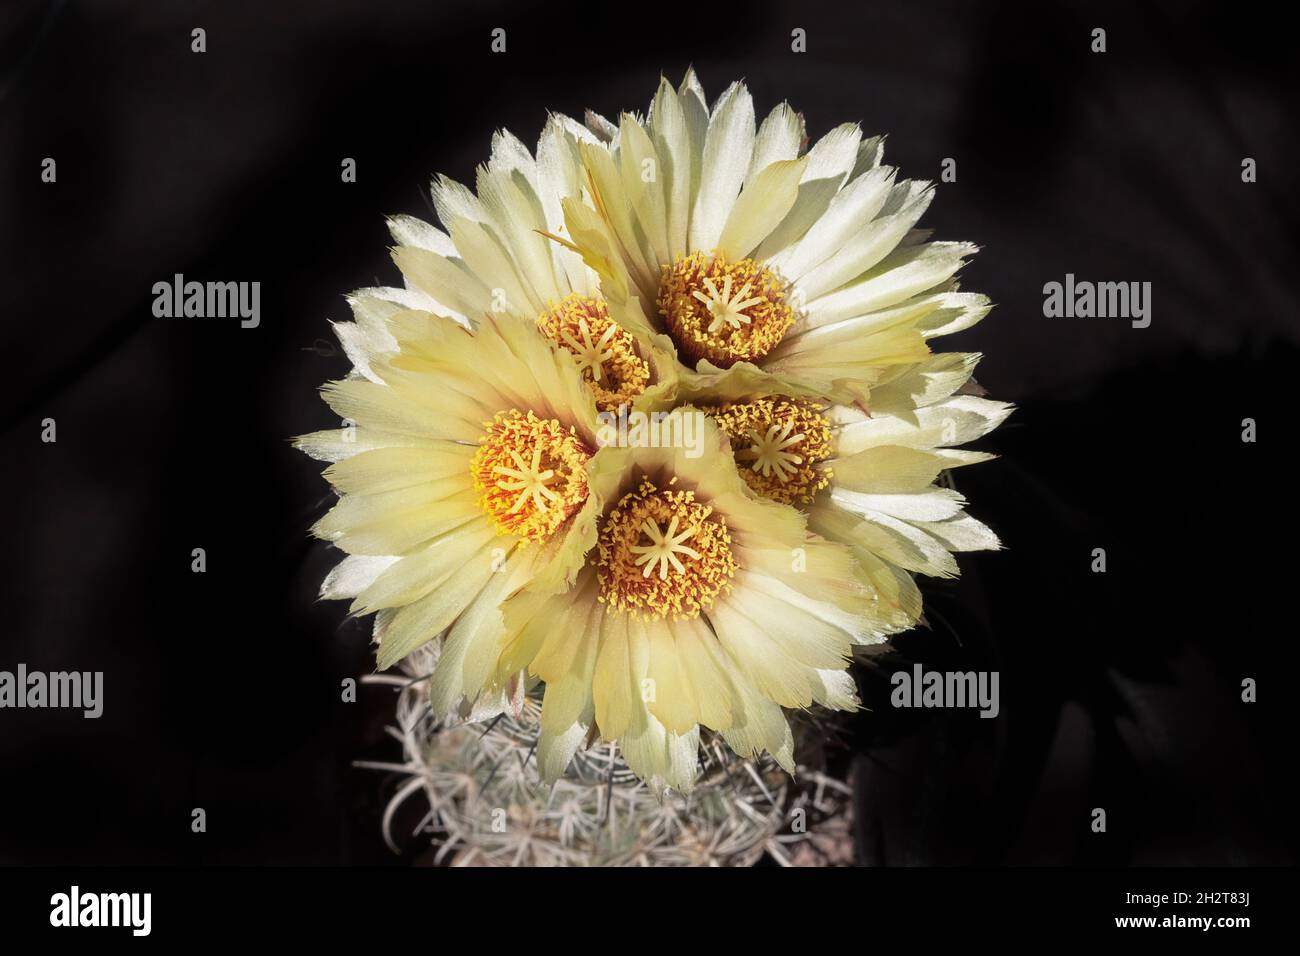 Cinque luminosi raggi di coryphantha giallo luce solare Mare Urchin cactus fiori che fioriscono in un cerchio stretto su uno sfondo nero che mostra parte della pianta Foto Stock